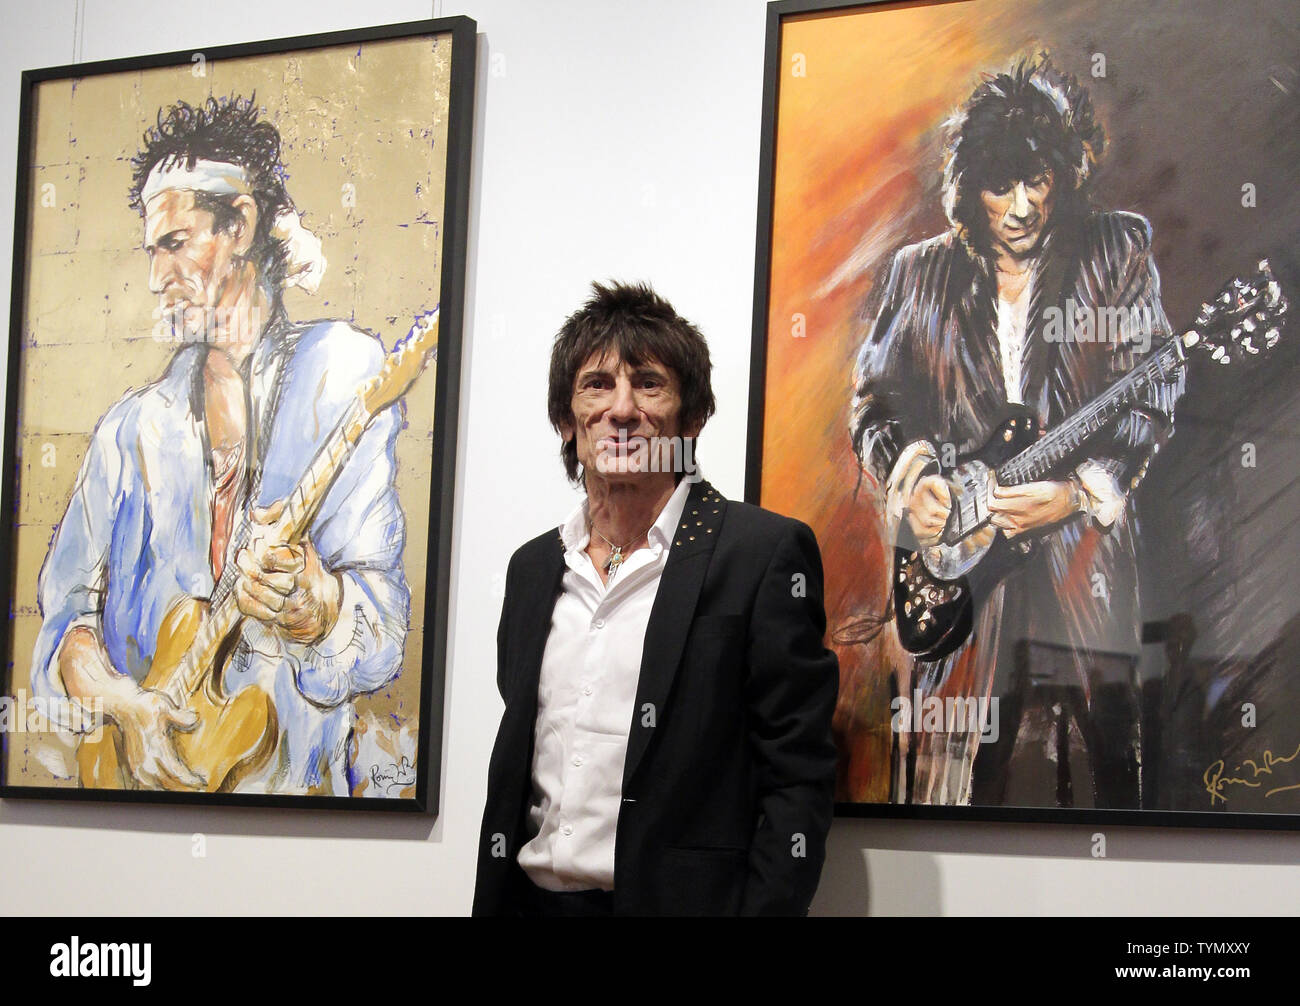 El guitarrista de los Rolling Stones Ron Ronnie Wood está cerca de sus  pinturas, en la inauguración de una exposición de su obra, "los rostros,  tiempo y lugares" en la Ciudad de